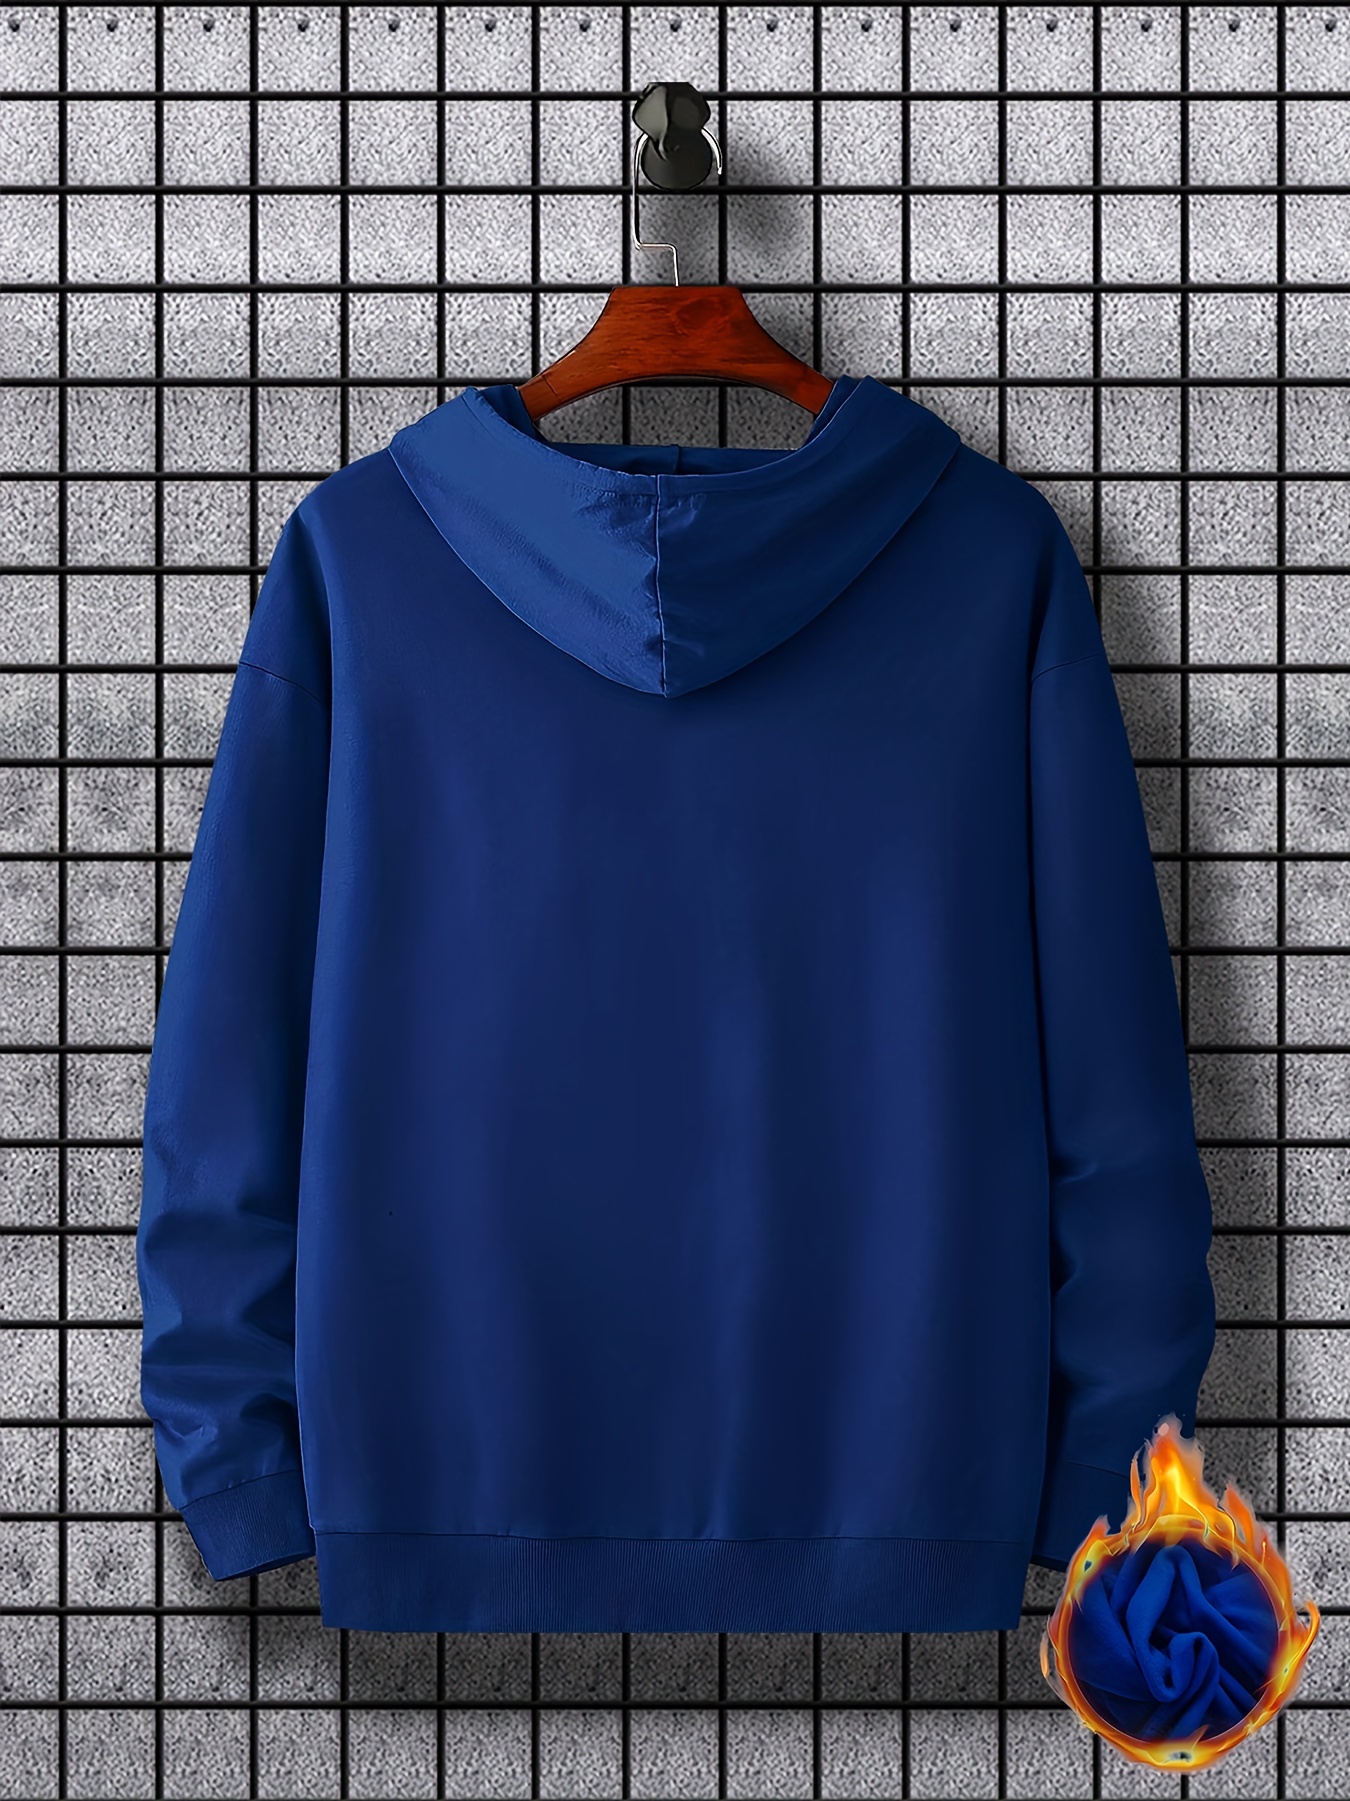 bus pattern warm hoodie with kangaroo pocket mens casual pullover hooded sweatshirt details 31